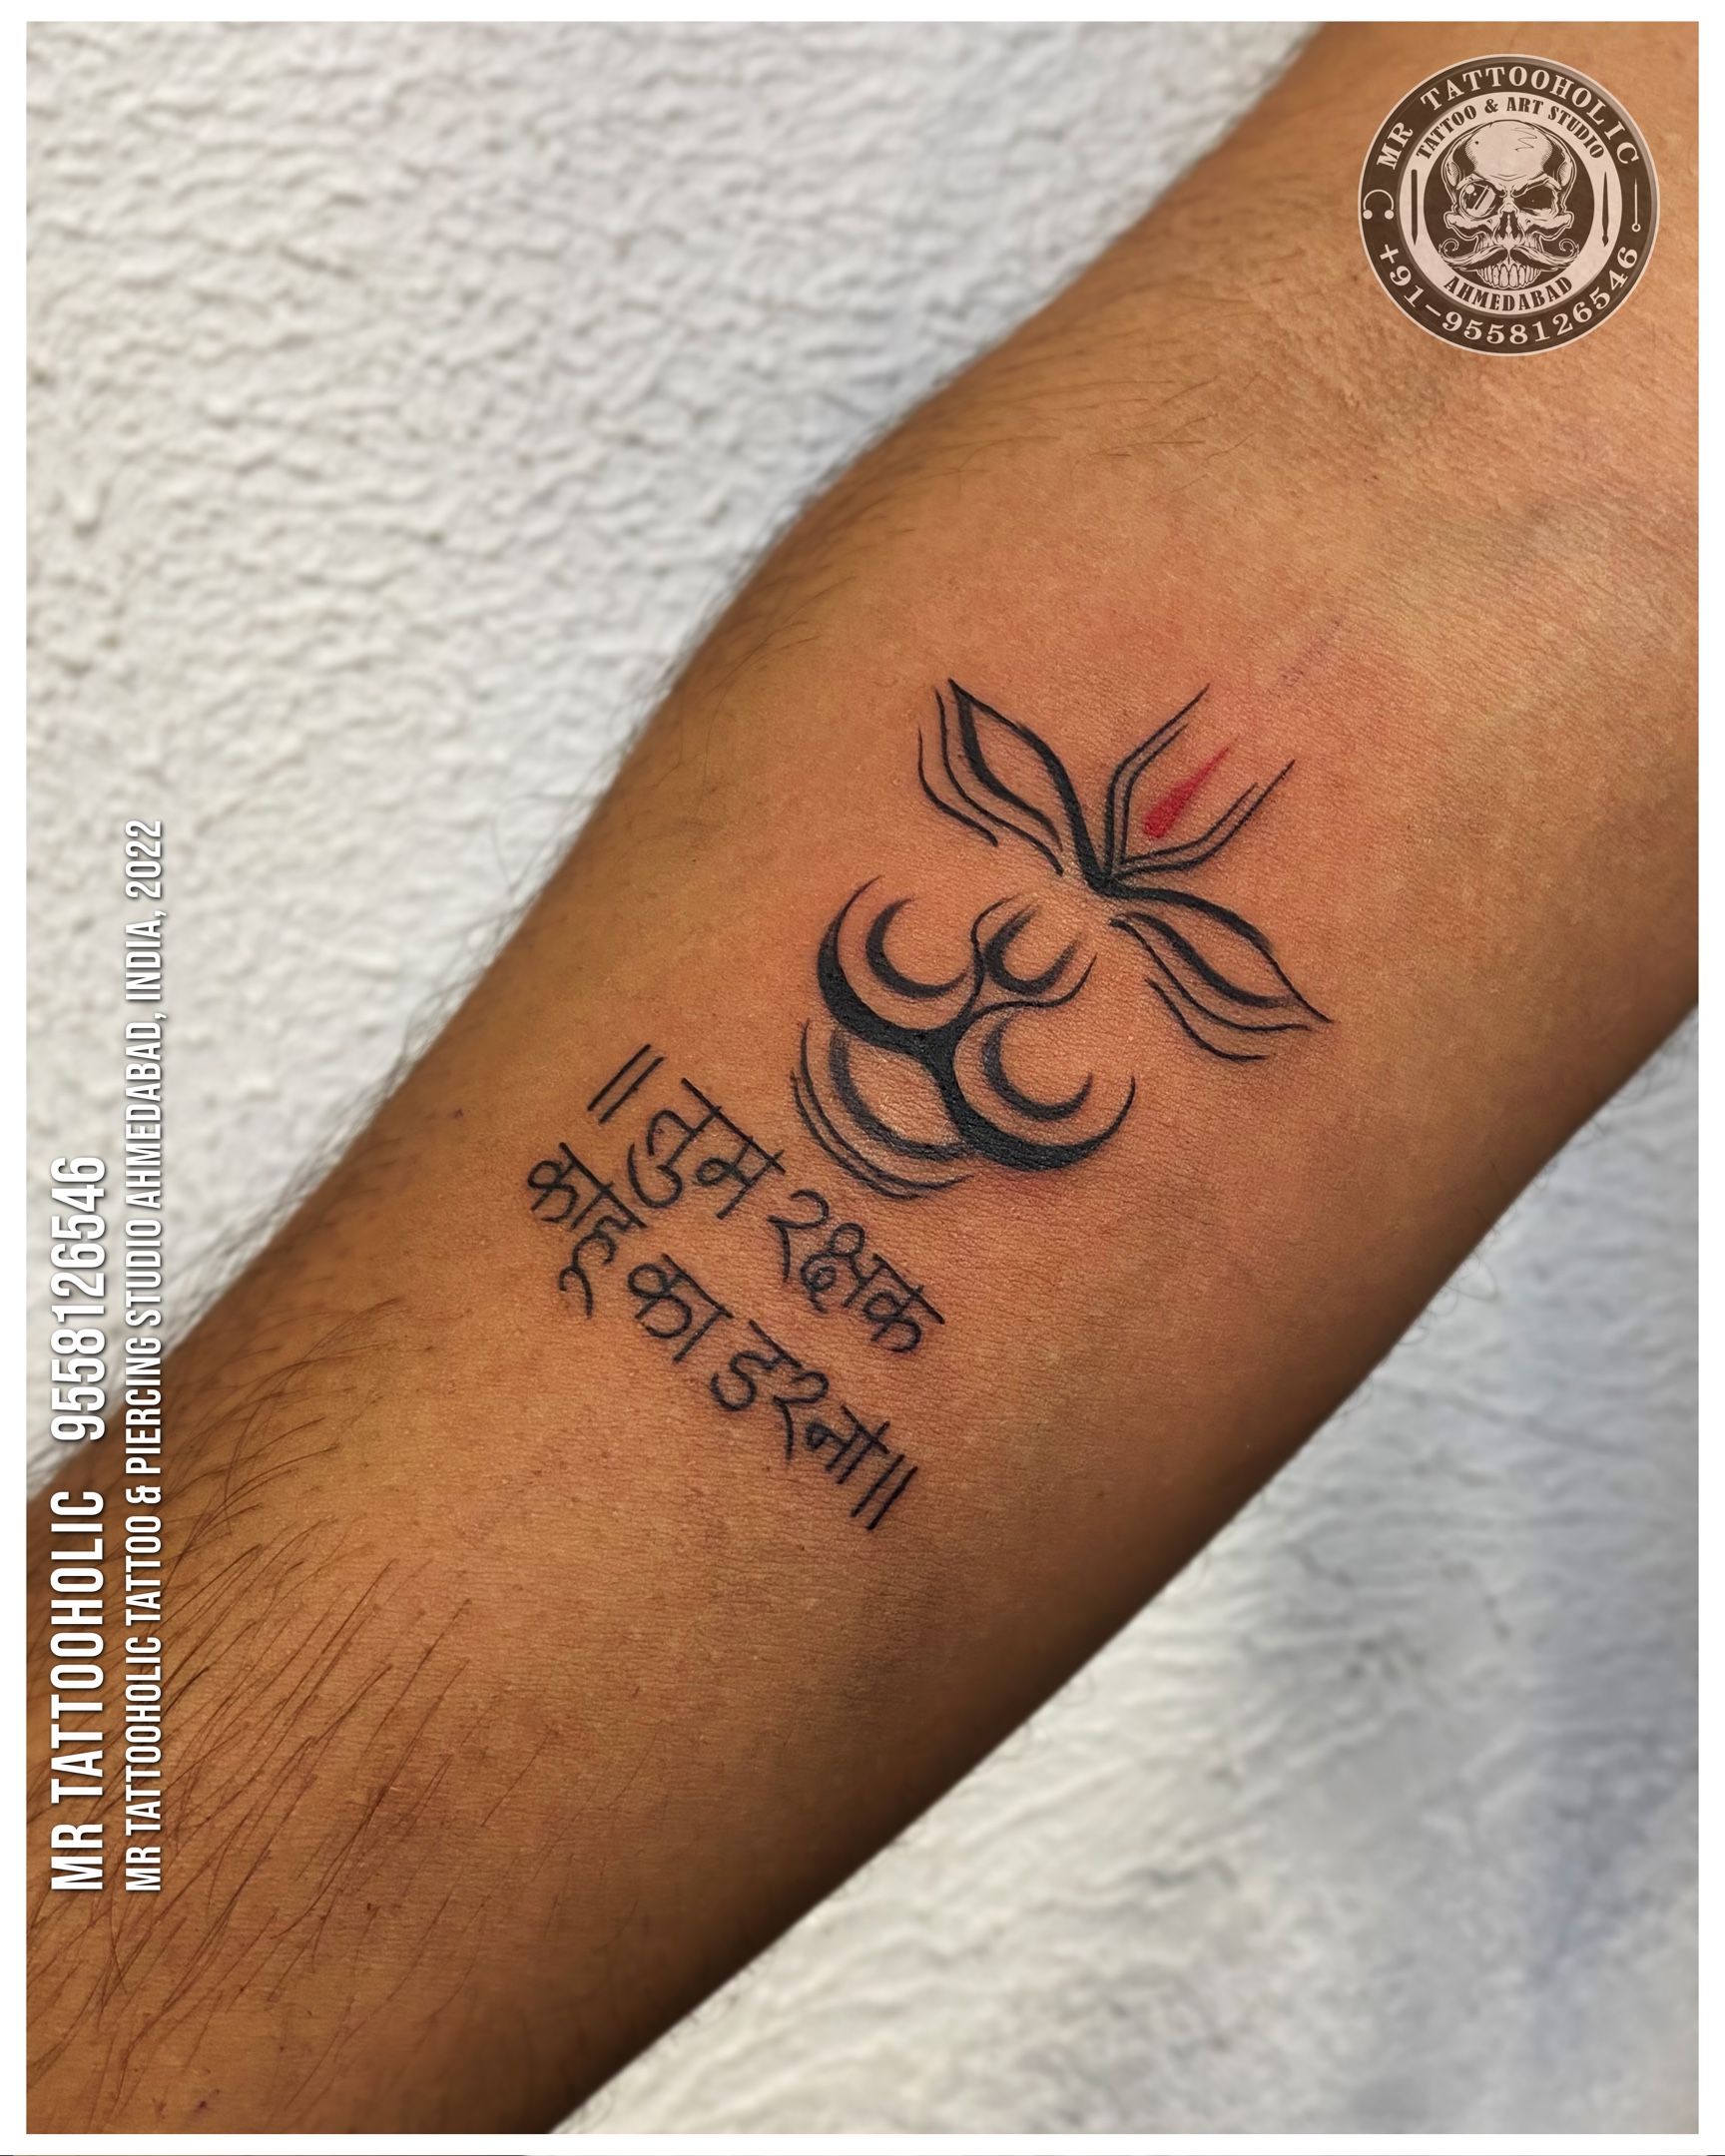 Temporary Tattoowala Lord Hanuman Mantra Shorts Tattoo on Hand Waterproof  Temporary Body Tattoo : Amazon.in: Beauty